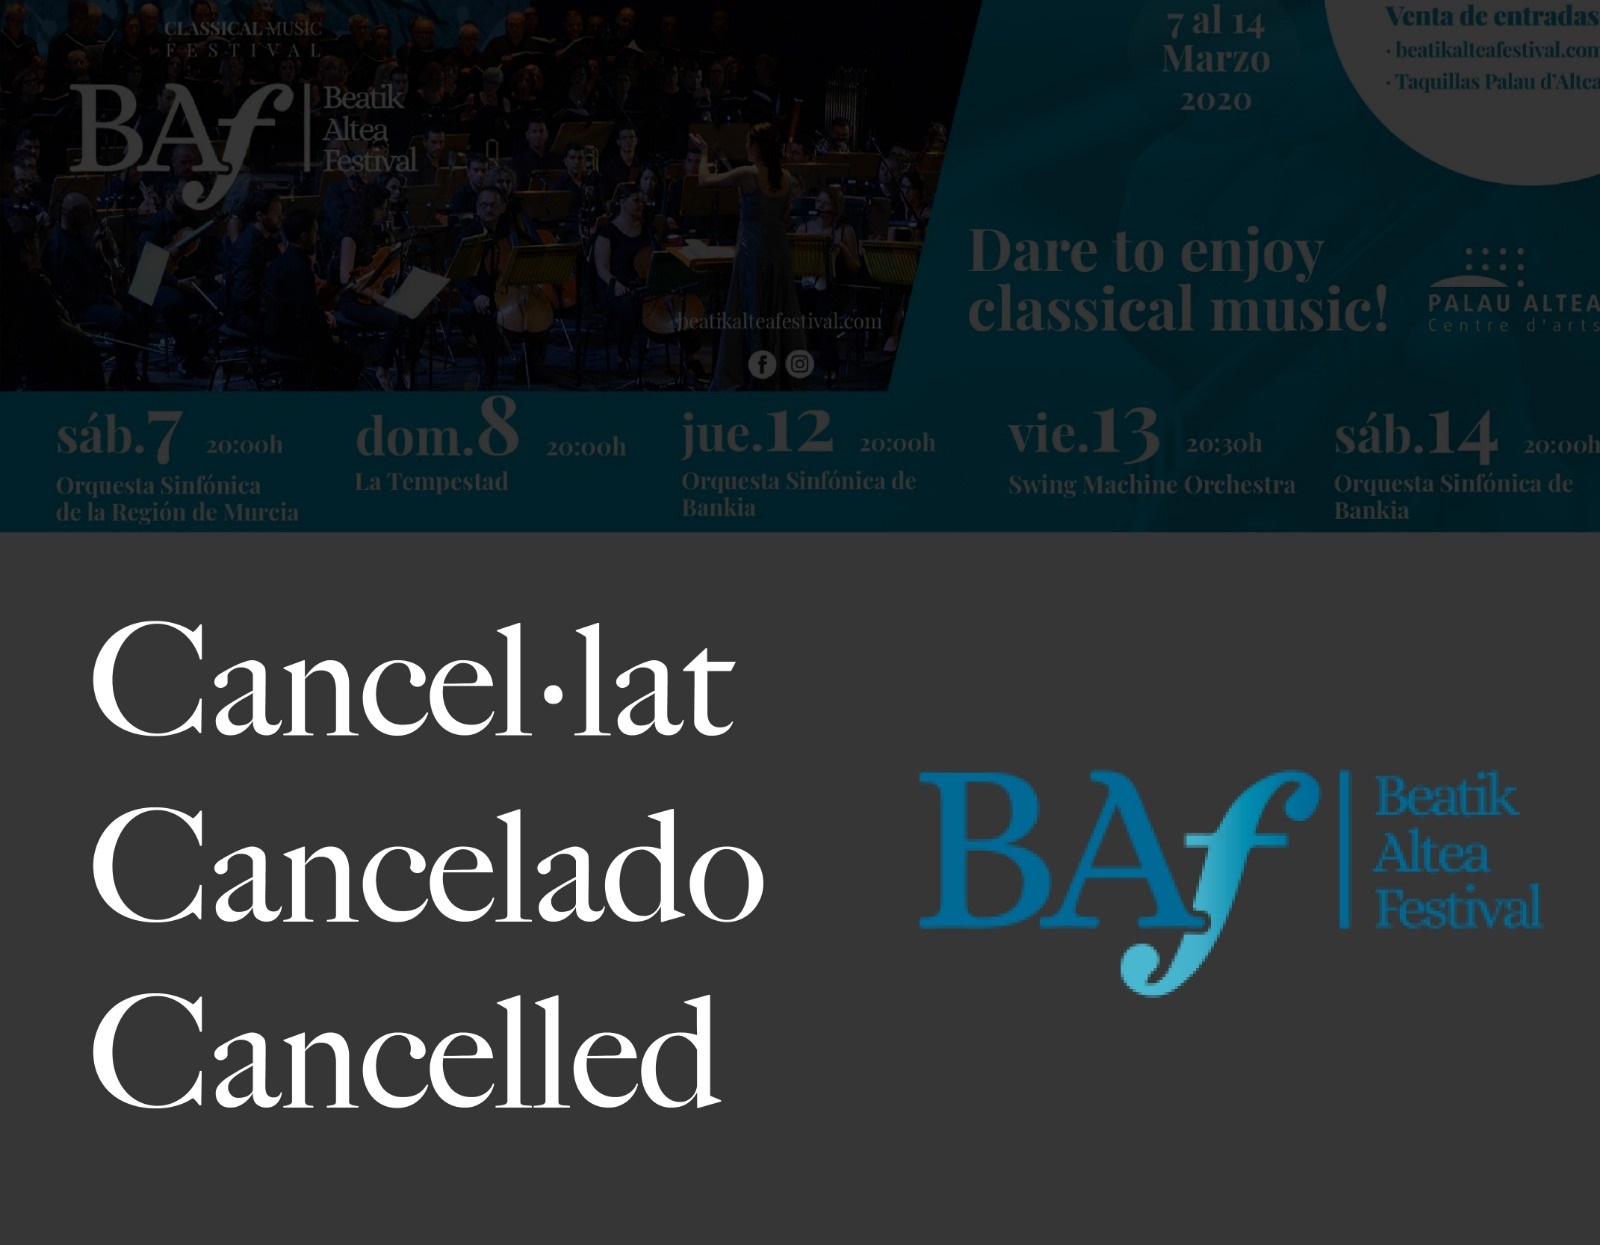 La regidoria de Cultura informa de la cancel·lació de les actuacions del Beatik Altea Festival dels dies 12, 13 i 14 de març